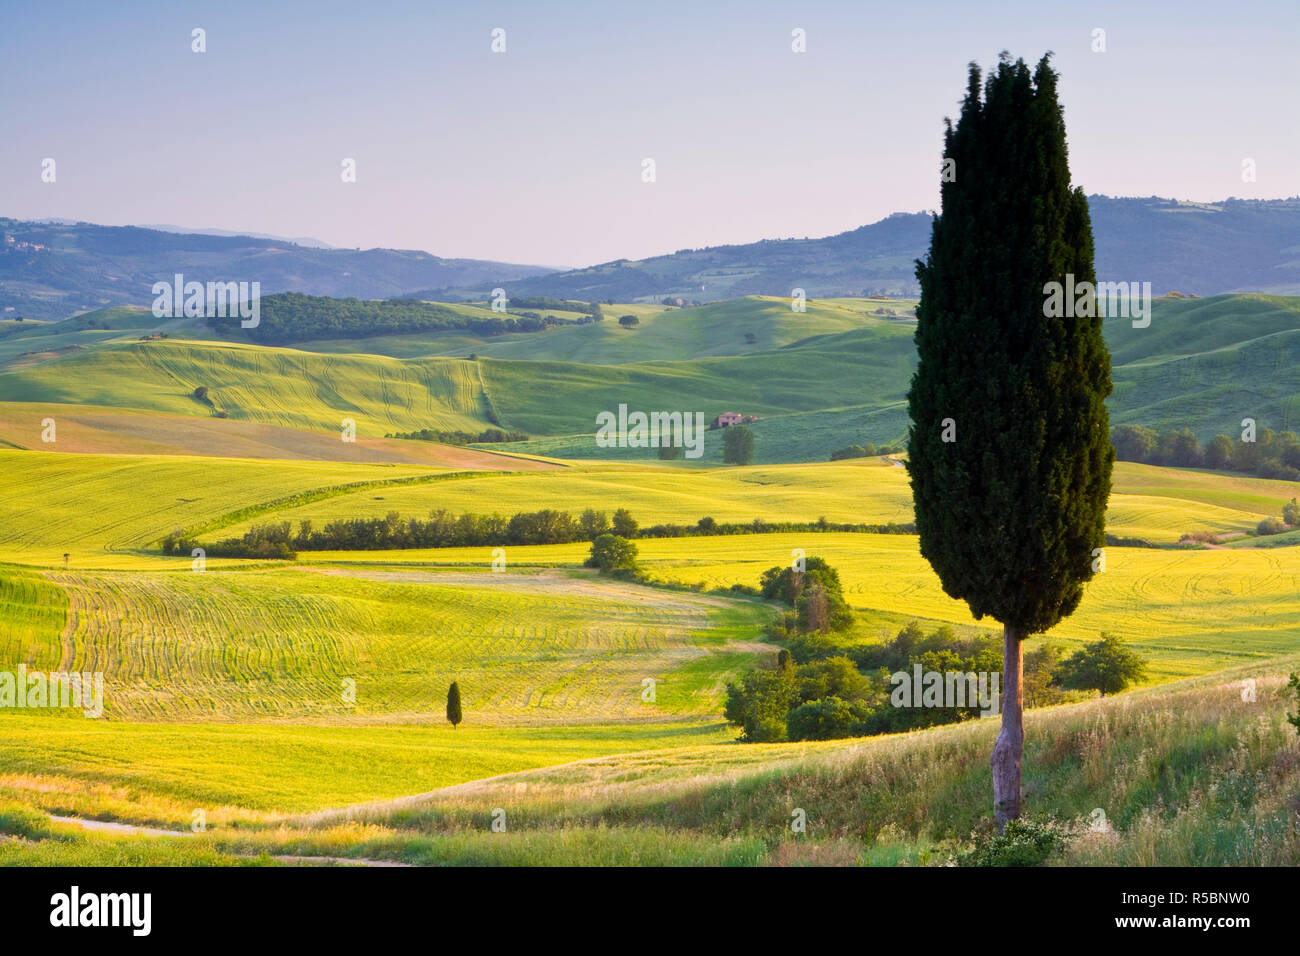 Landscale near Pienza, Val d' Orcia, Tuscany, Italy Stock Photo